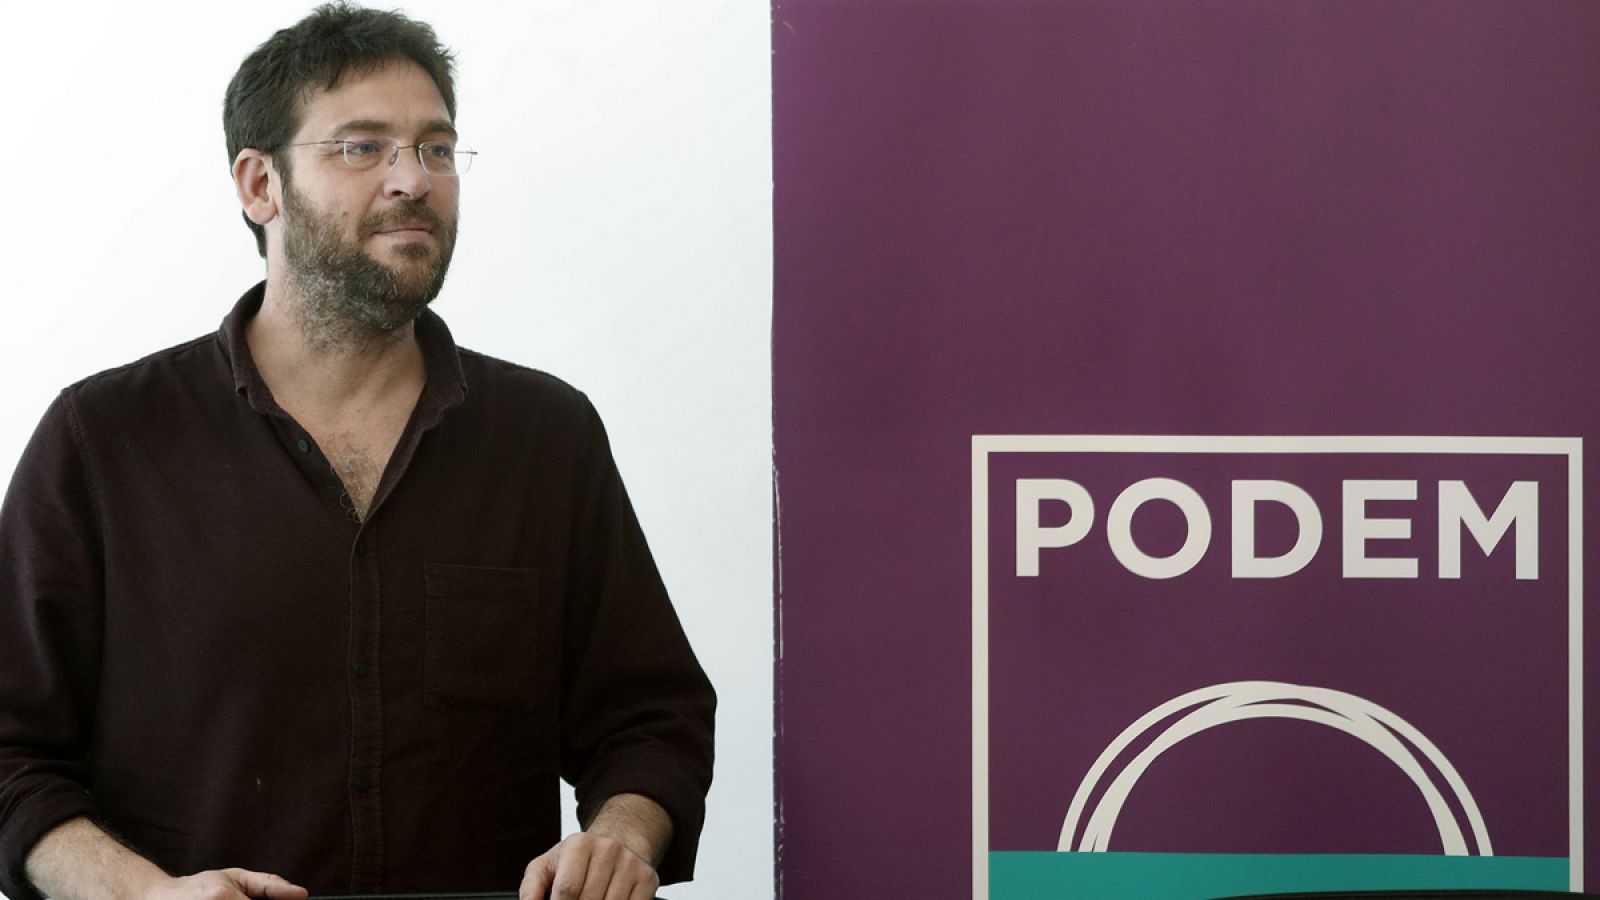 El líder de Podem, Albano Dante Fachin